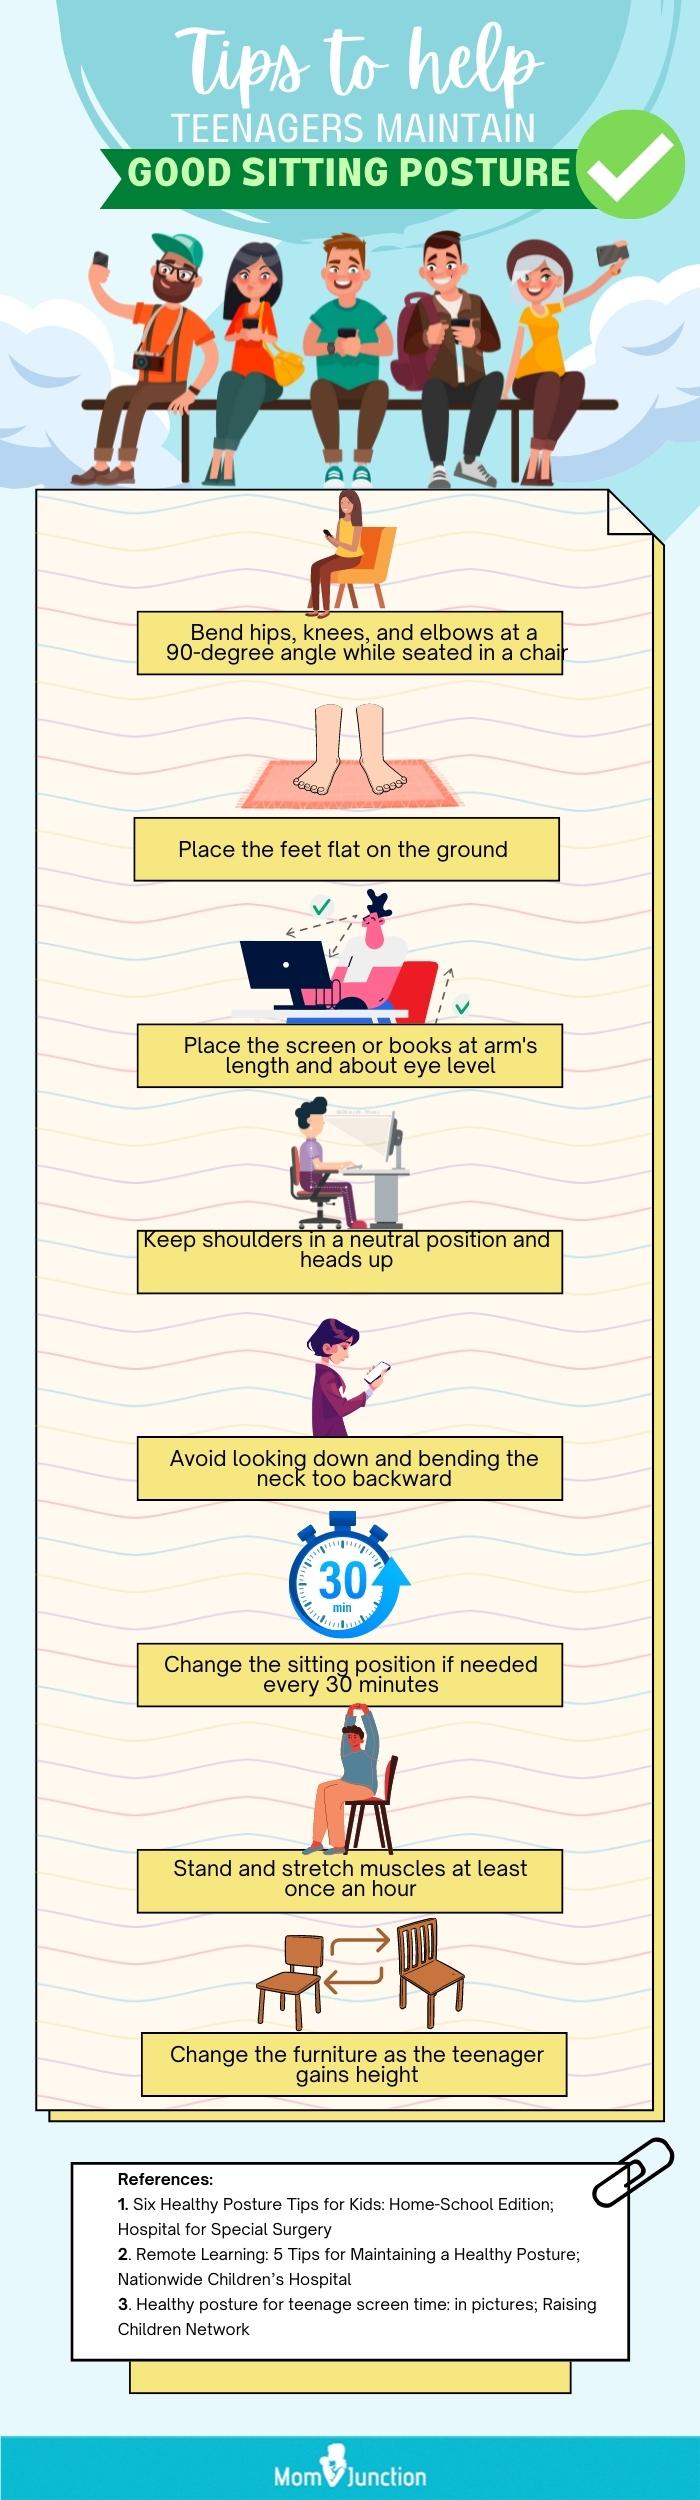 帮助青少年保持良好坐姿的建议(信息图)